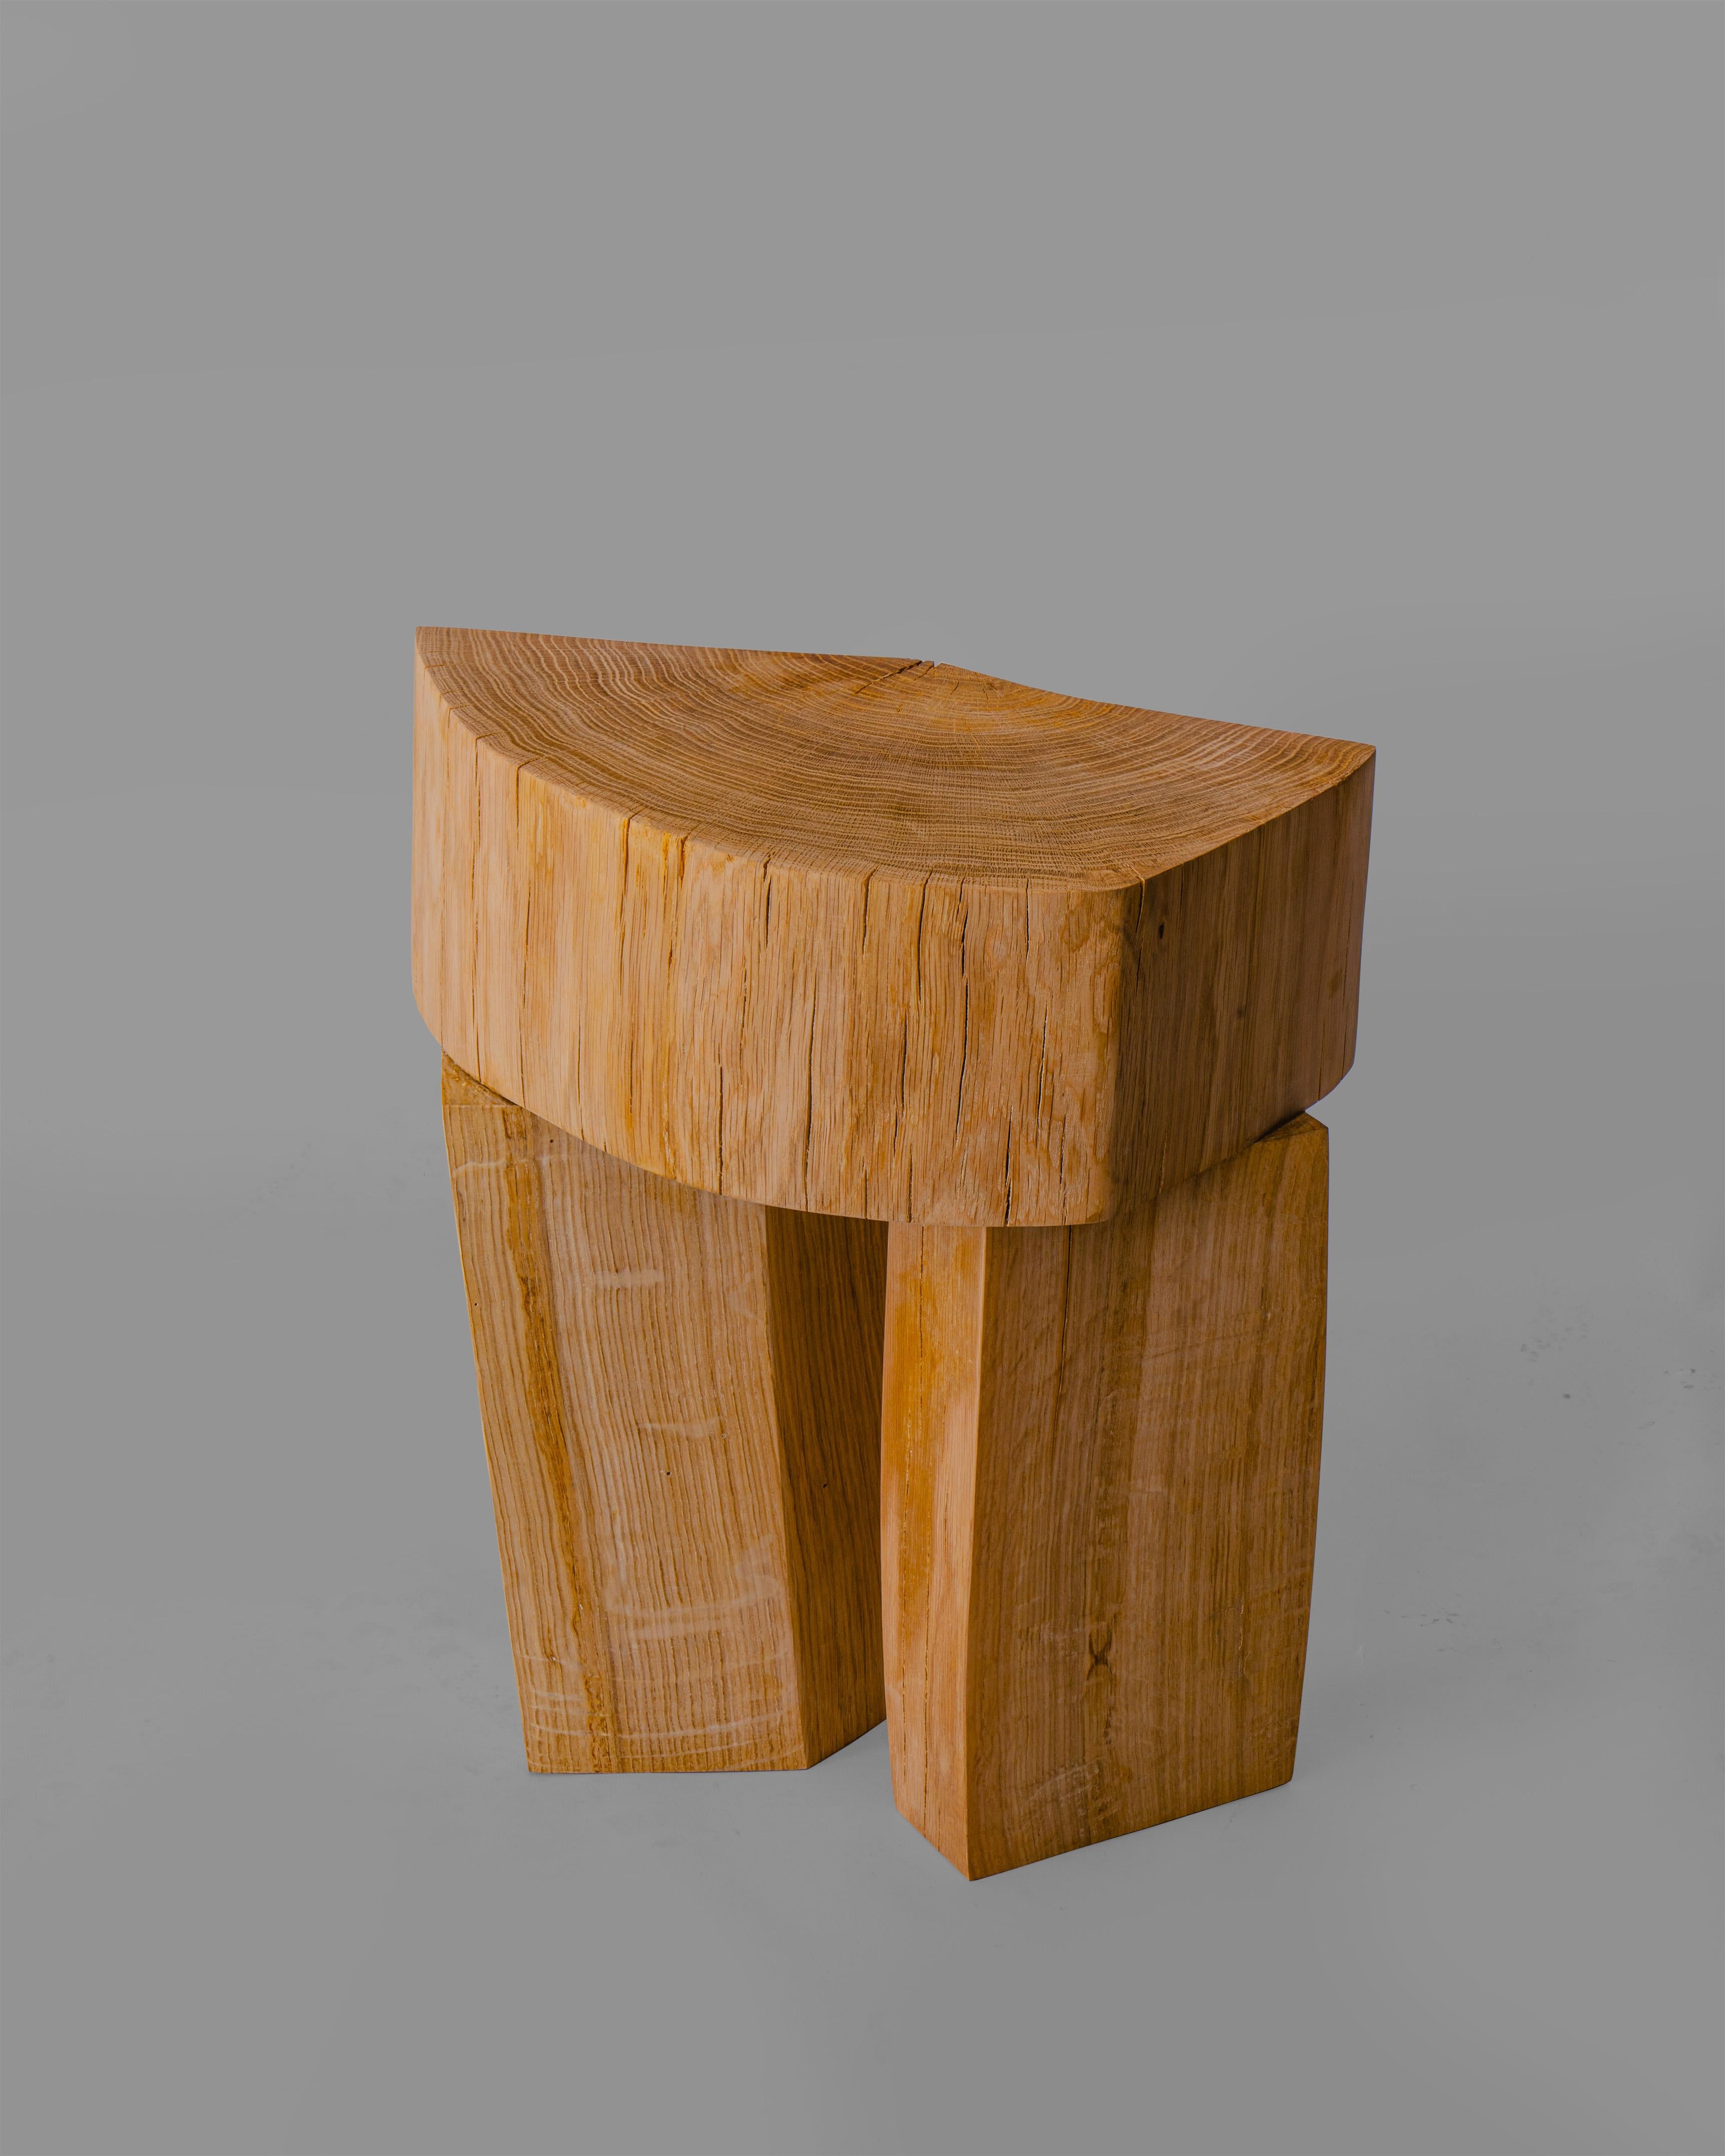 Le tabouret 3 fait partie d'une collection de tabourets conçus par le studio Heim+Viladrich. La collection a été réalisée à partir de fragments de bois provenant de chênes abattus lors de la construction d'une route en Aubrac, région Occitanie,